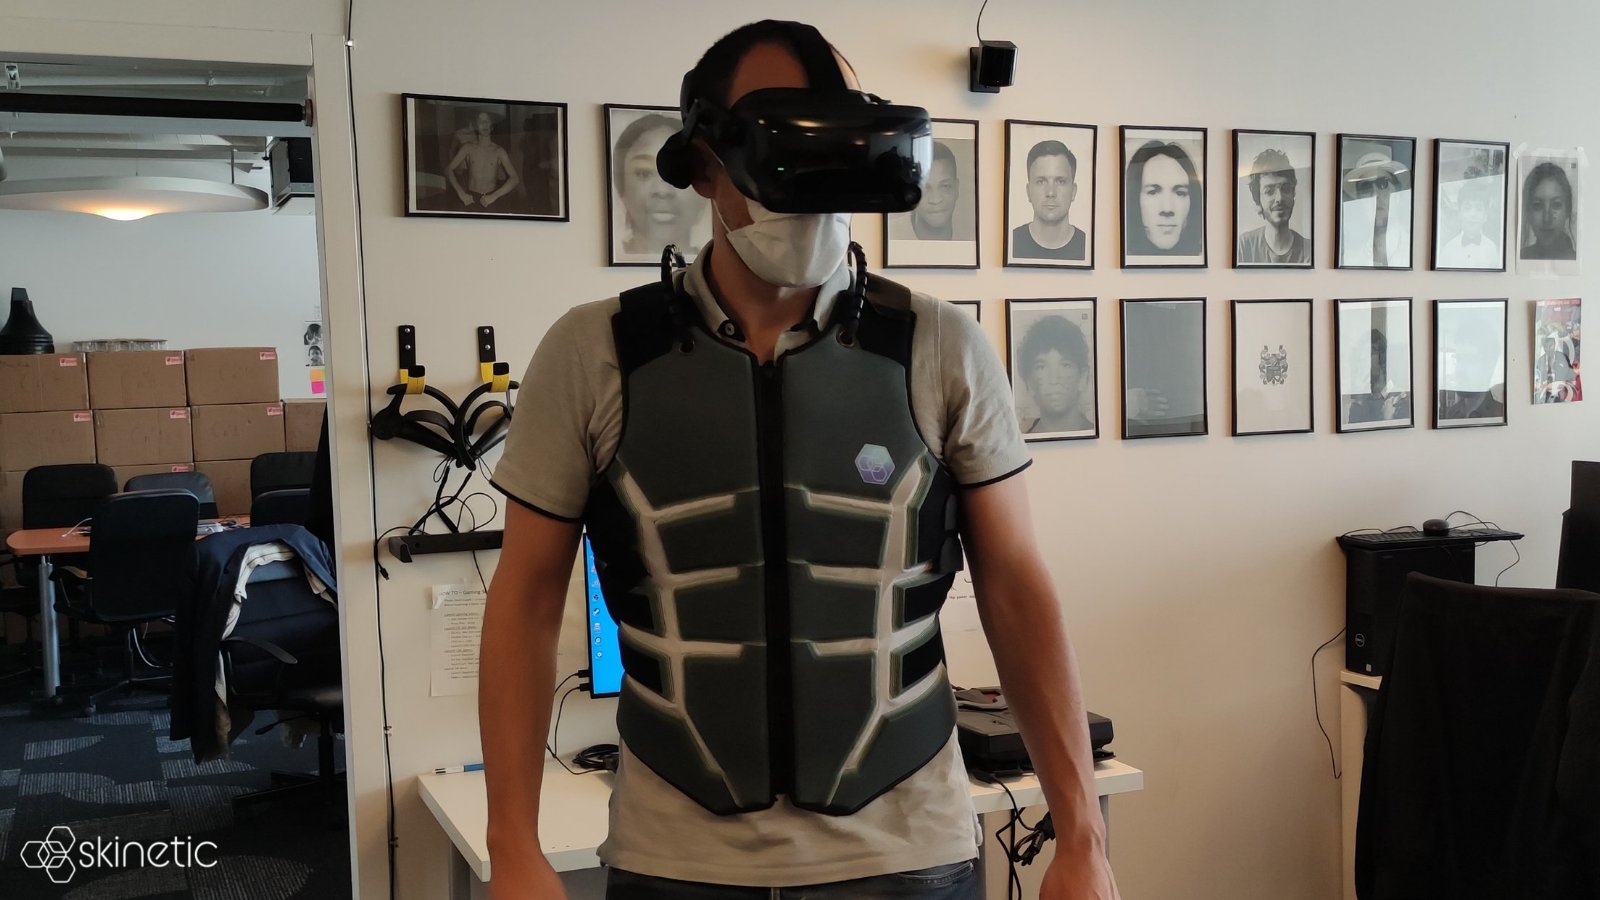 Actronika cho ra mắt áo vest Skinetic Haptic VR đem lại cảm giác như trúng đạn khi mặc 